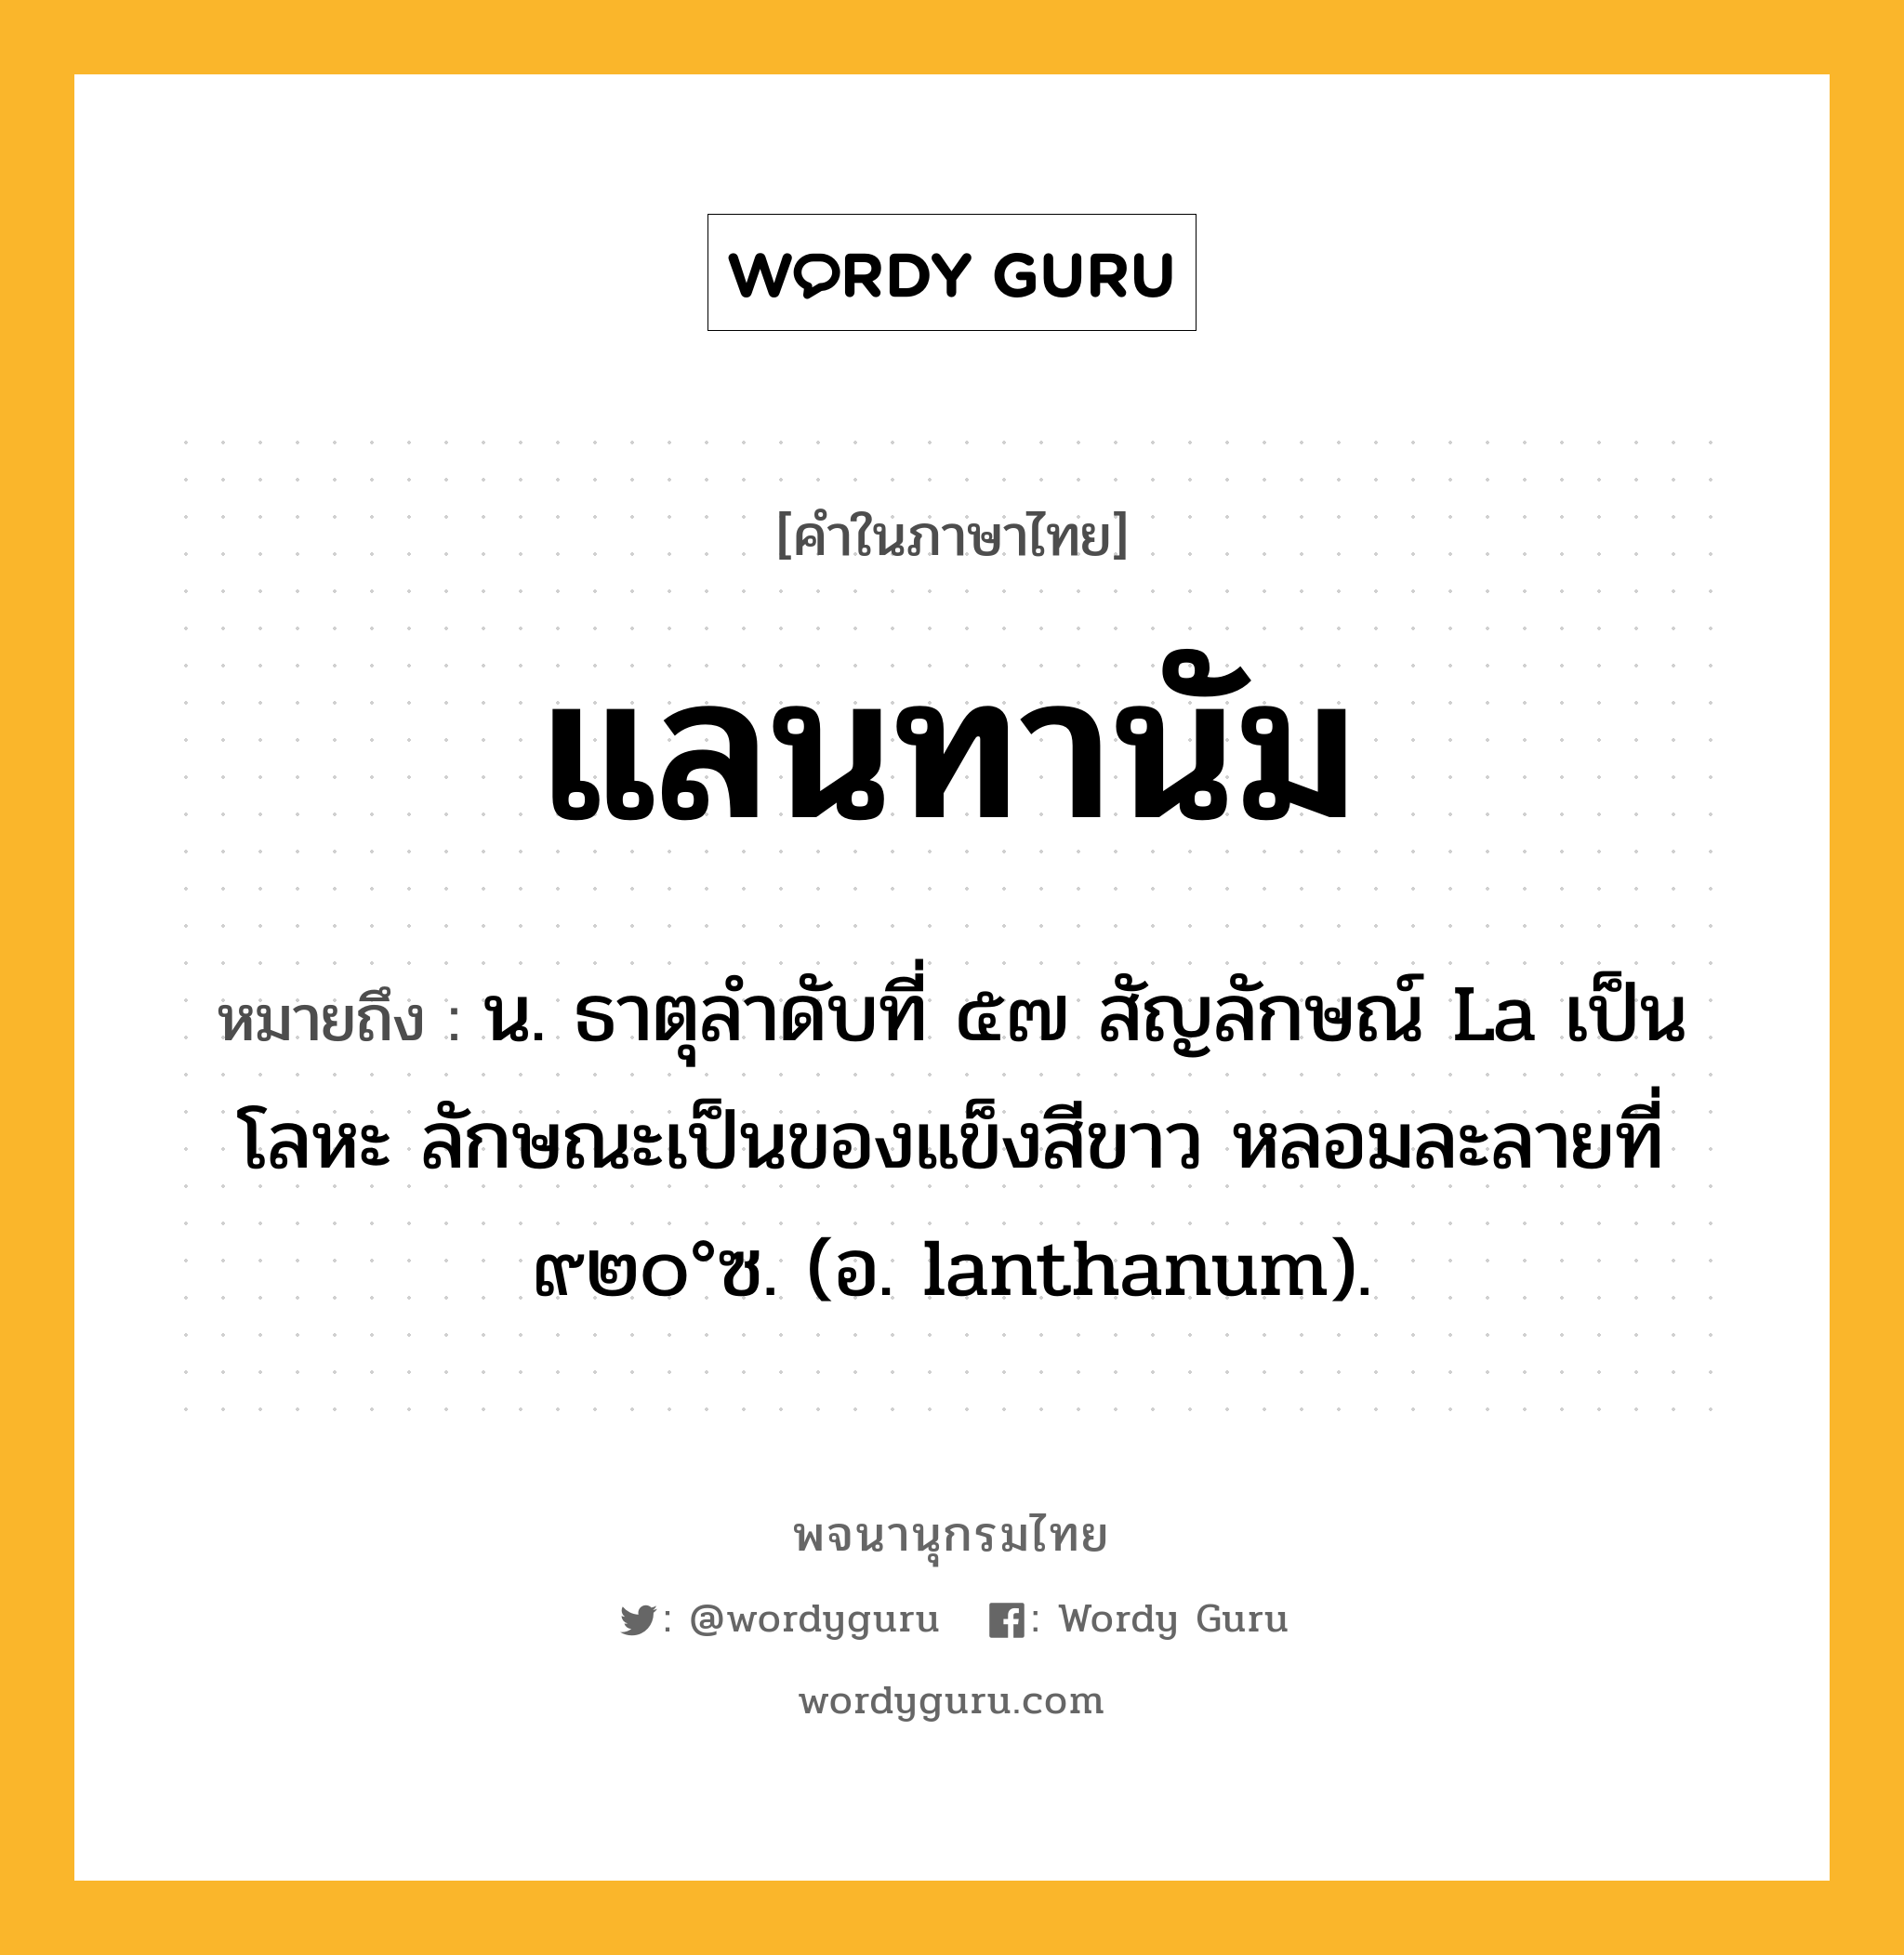 แลนทานัม ความหมาย หมายถึงอะไร?, คำในภาษาไทย แลนทานัม หมายถึง น. ธาตุลําดับที่ ๕๗ สัญลักษณ์ La เป็นโลหะ ลักษณะเป็นของแข็งสีขาว หลอมละลายที่ ๙๒๐°ซ. (อ. lanthanum).